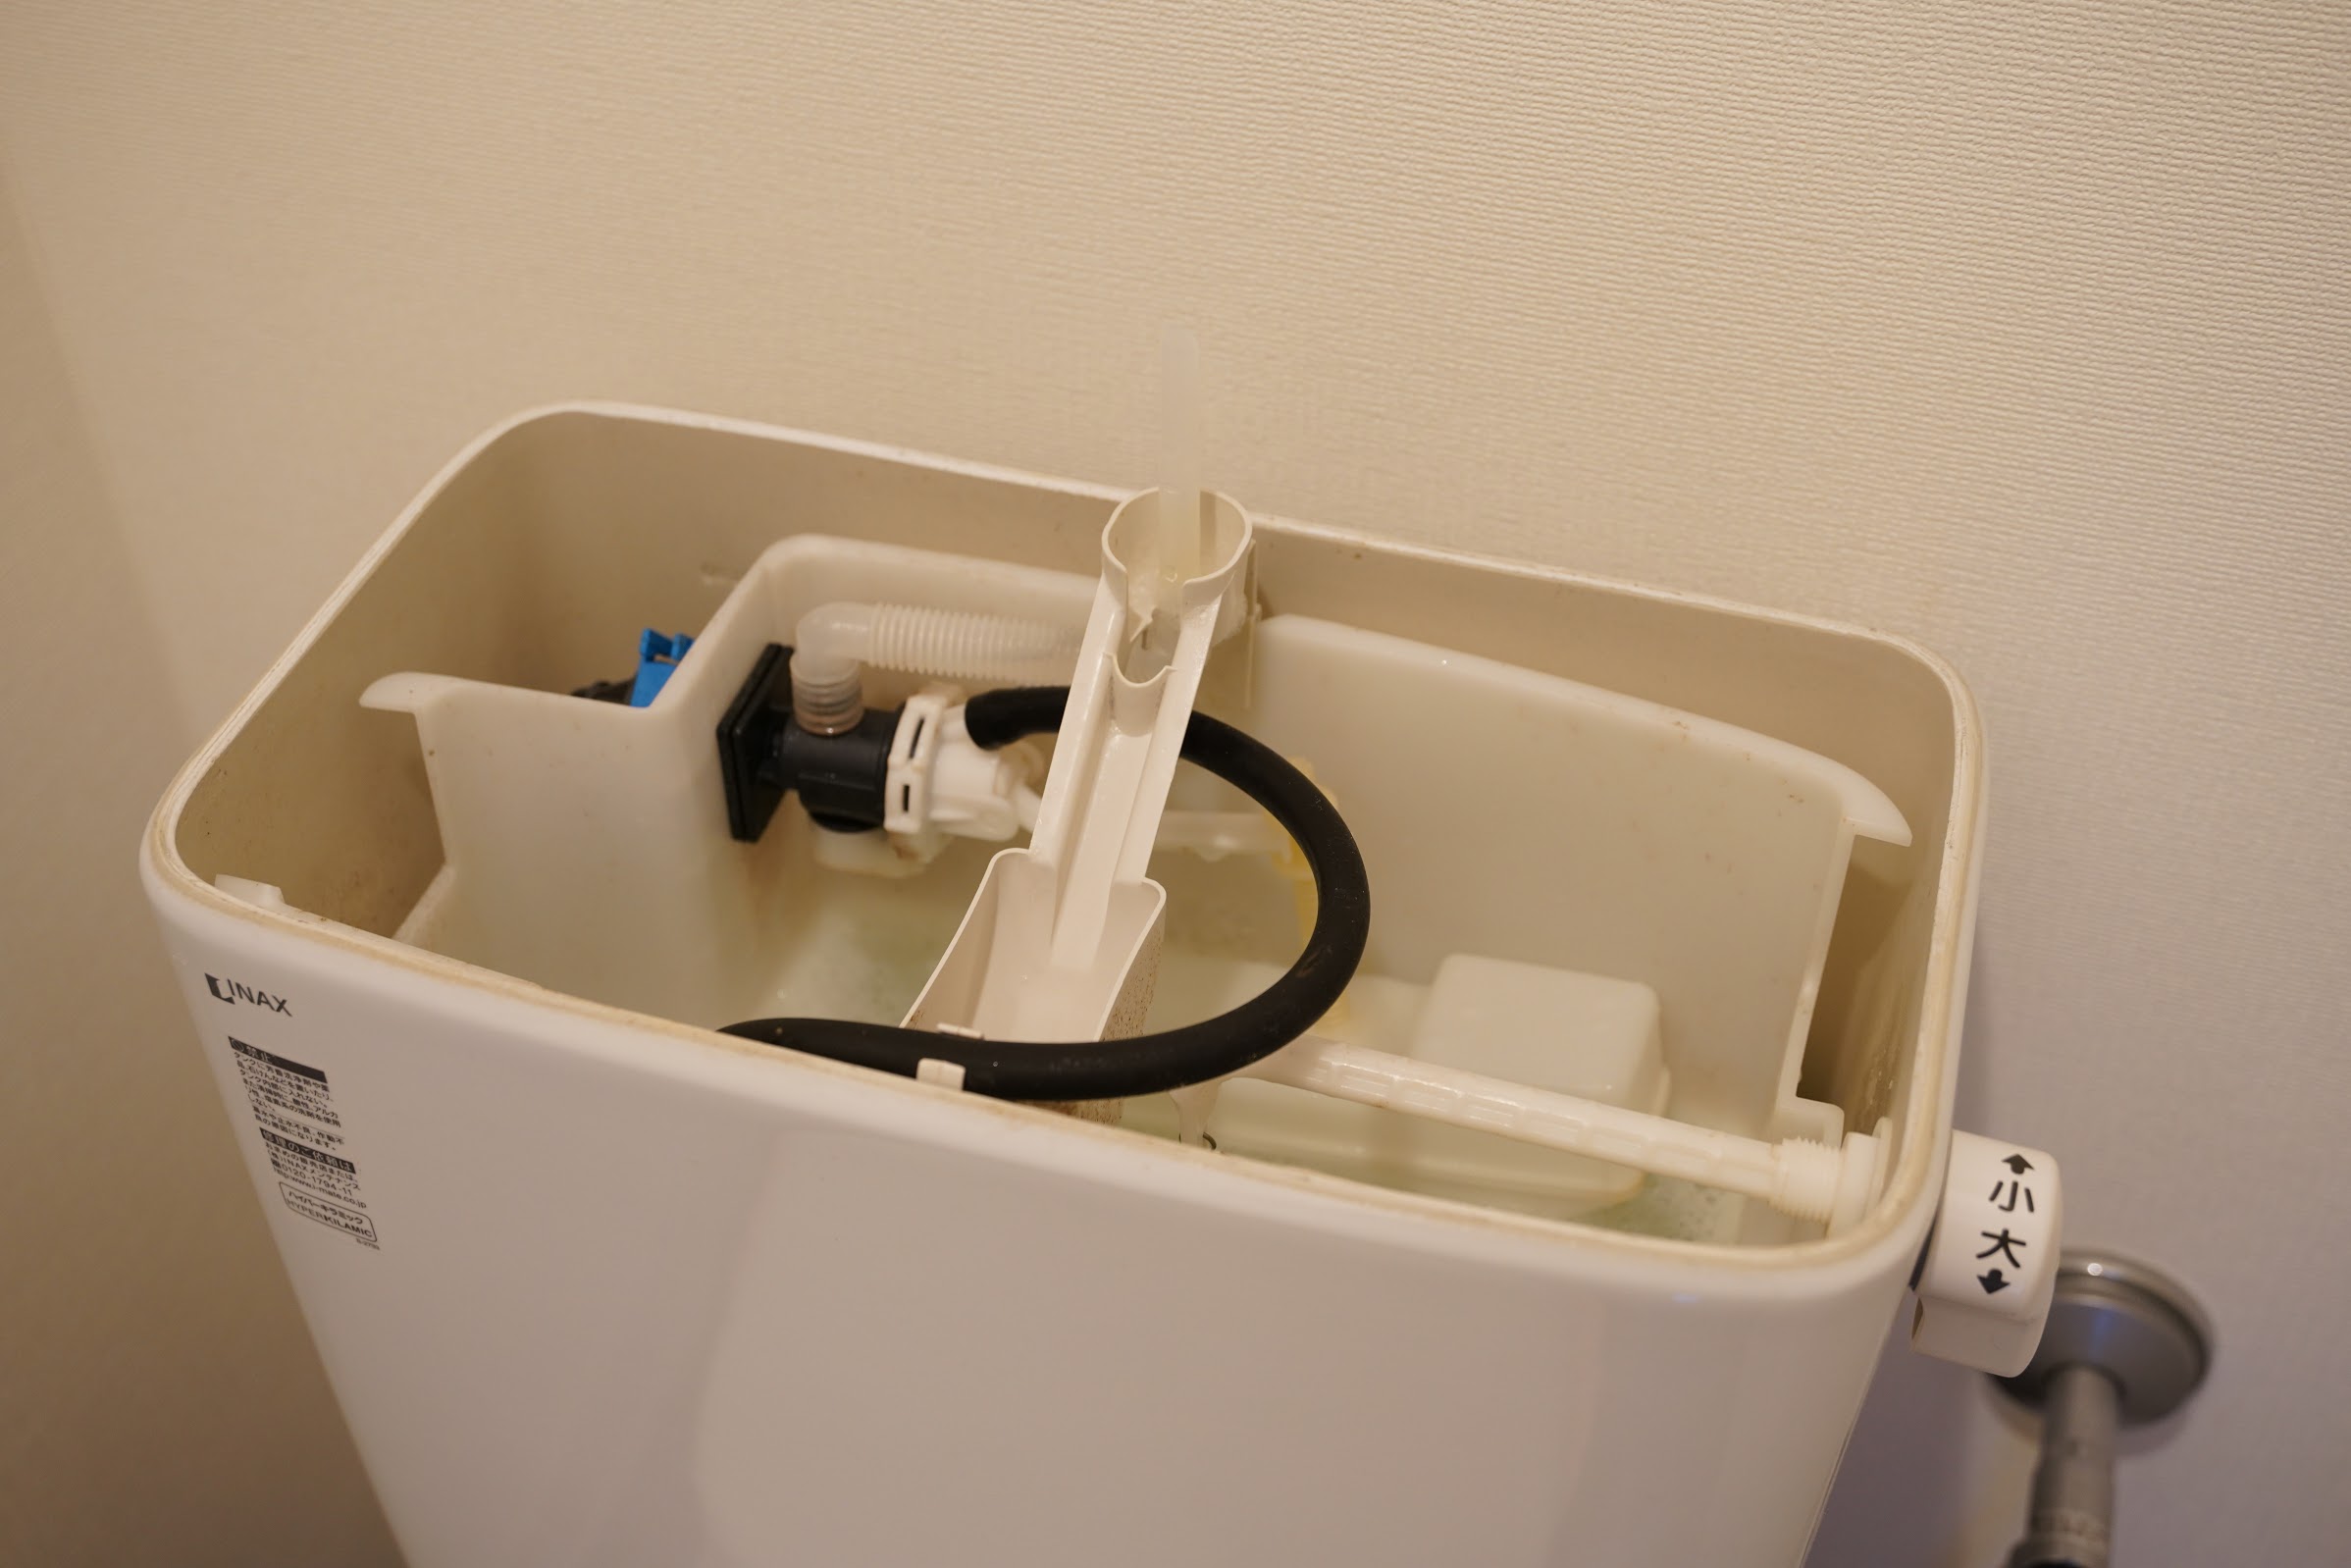 トイレタンクのカビ取り方法 カビペディア カビの悩みならカビペディア